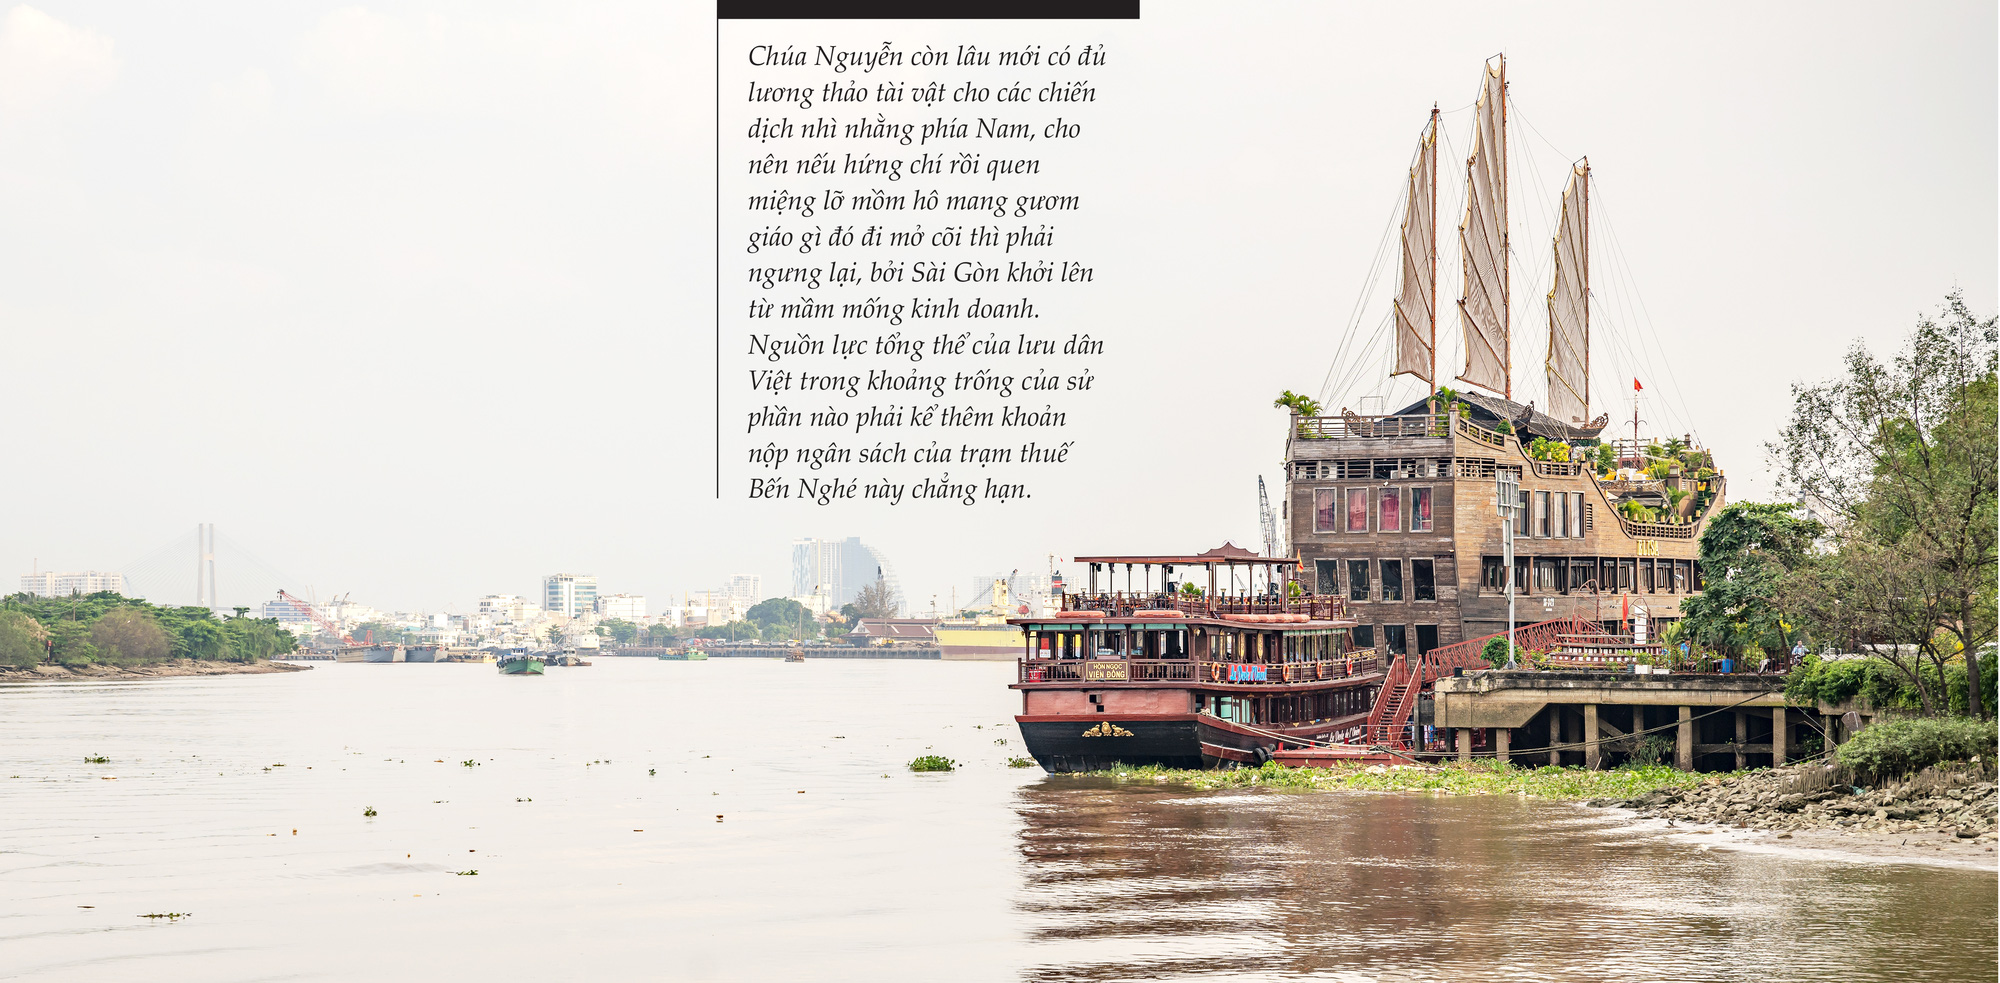 Sông Sài Gòn chảy theo dòng lịch sử - Ảnh 4.